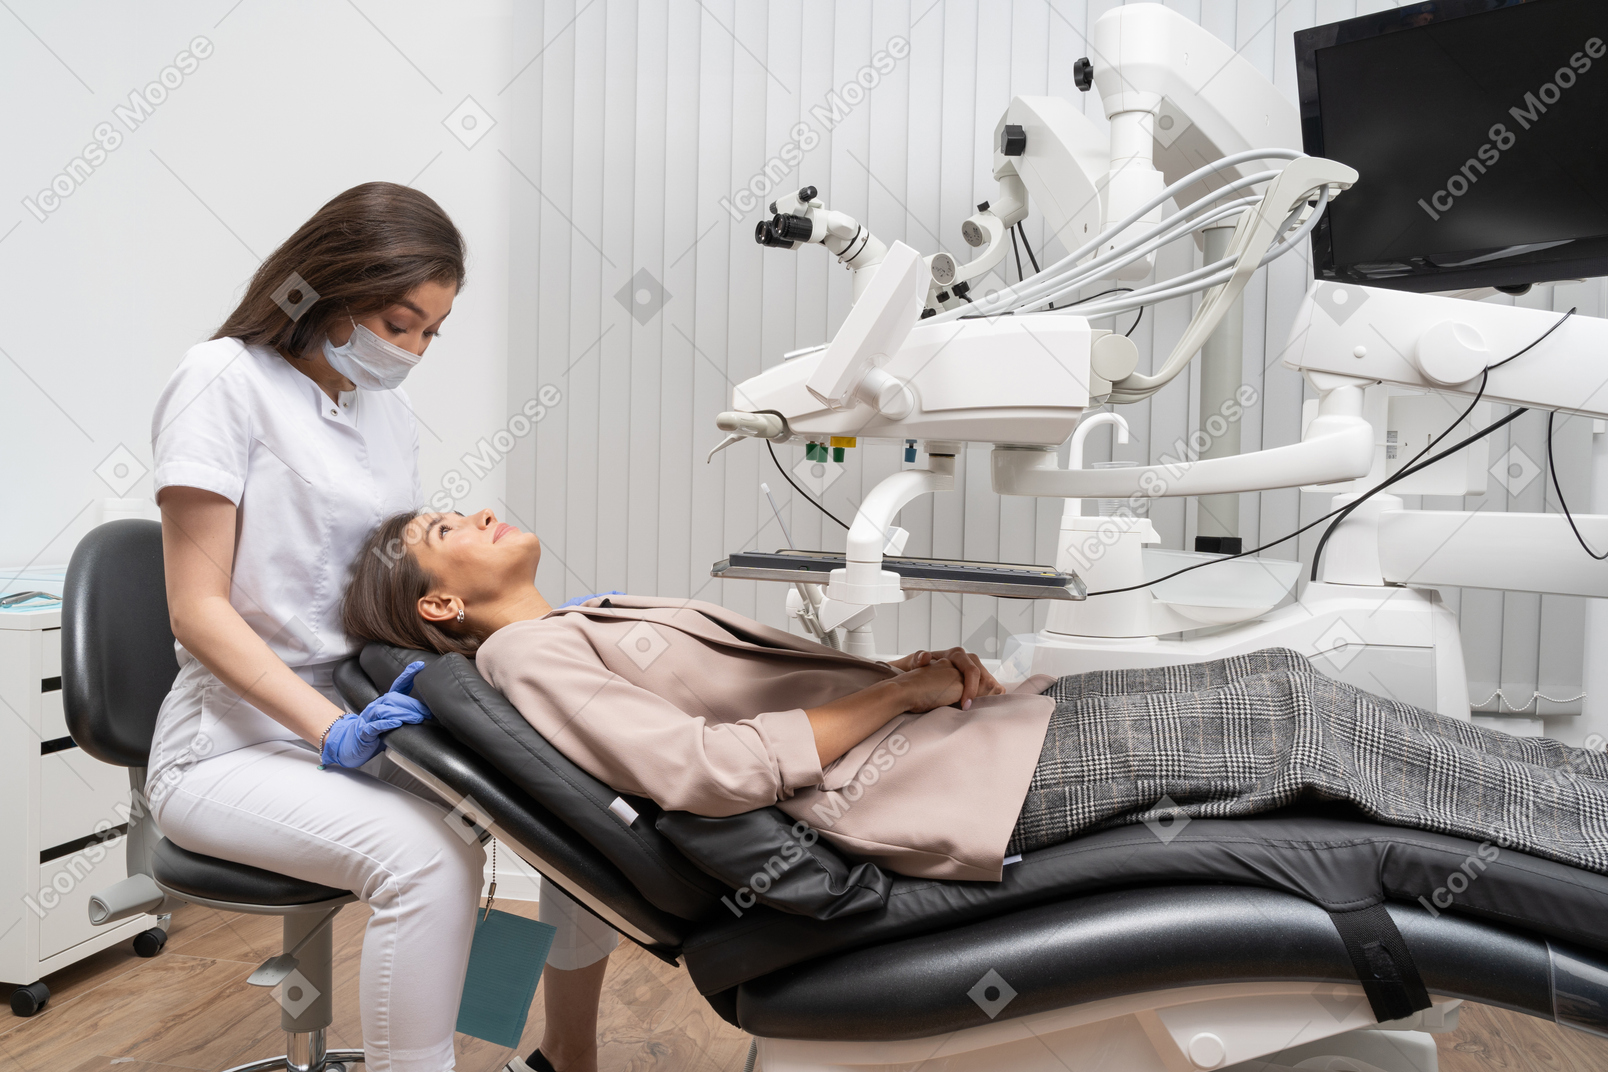 그녀의 여성 환자 검사를 준비하는 여성 치과 의사의 전체 길이